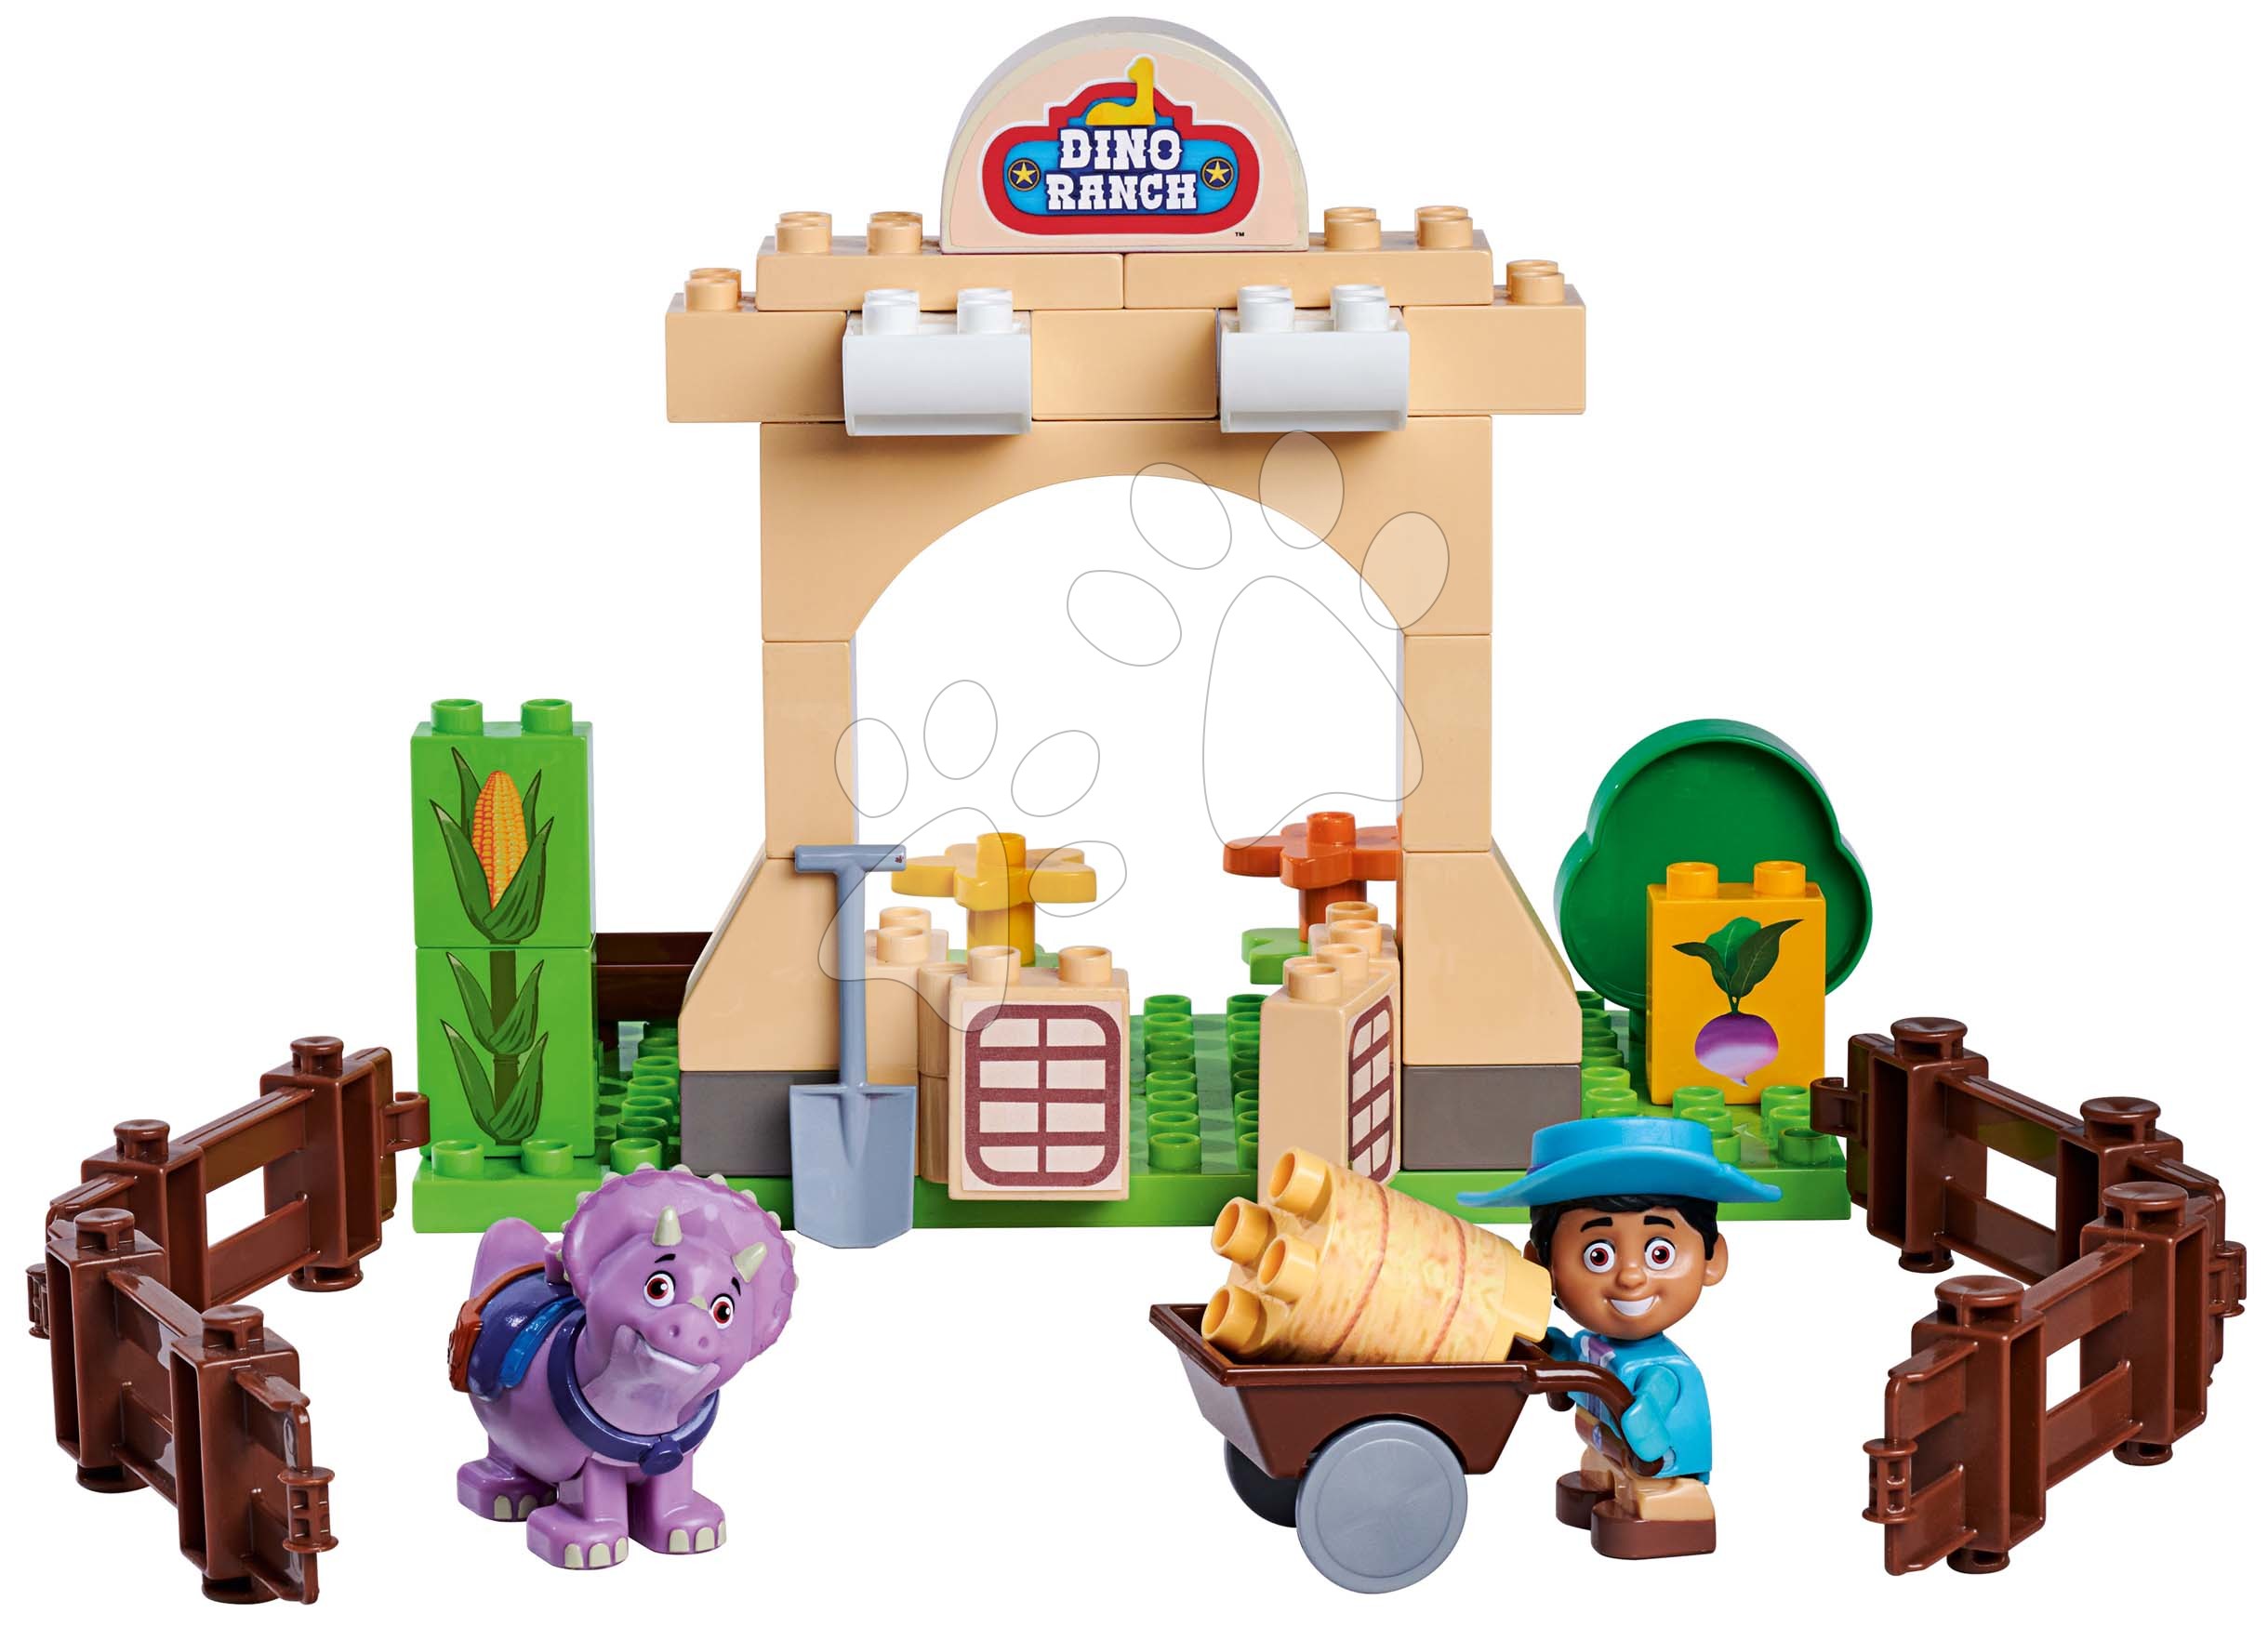 Építőjátékok BIG-Bloxx mint lego - Építőjáték Dino Ranch Corral PlayBig Bloxx BIG Miguel és Tango a rancson 40 darabos 1,5-5 éves korosztálynak